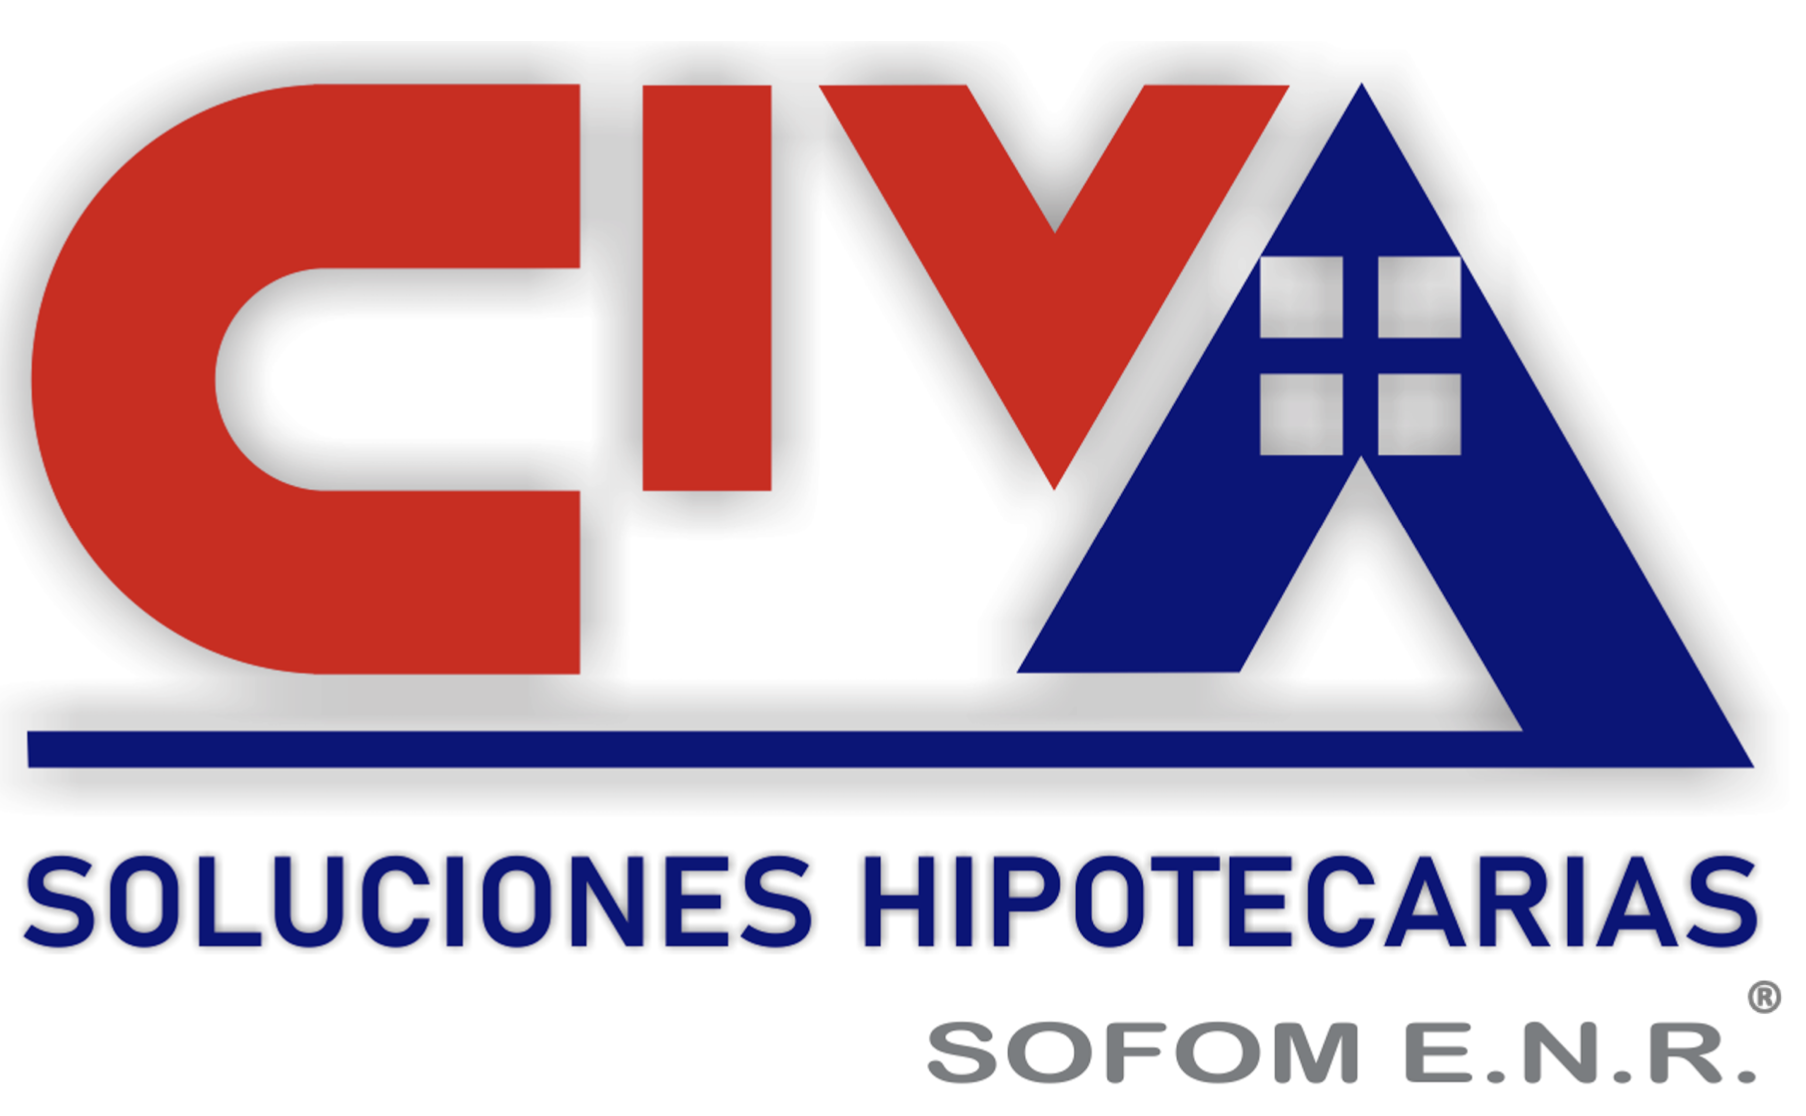 CIVA SOLUCIONES HIPOTECARIAS S.A. DE C.V. SOFOM E.N.R.